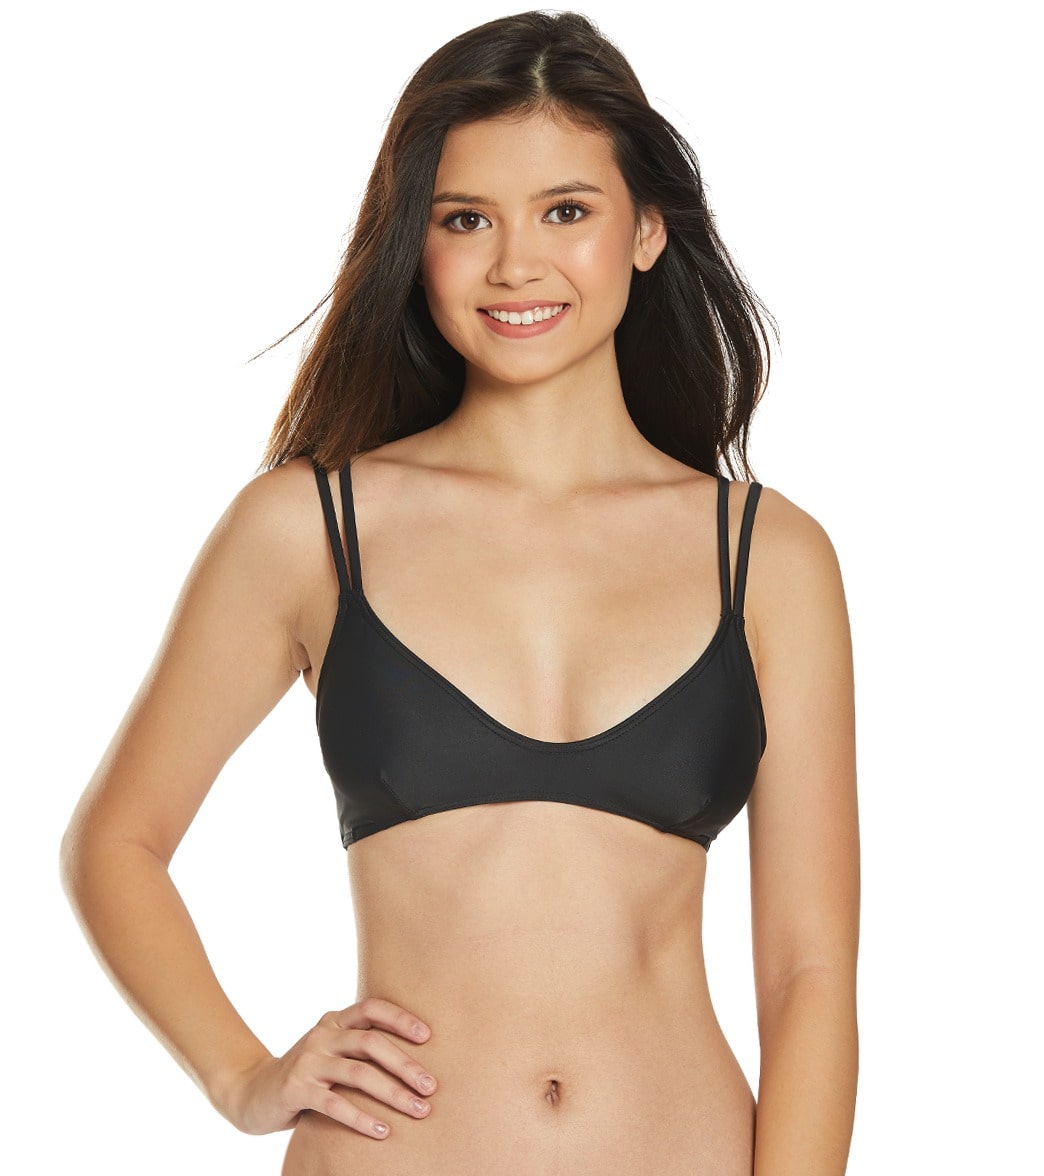 Sisstrevolution Neyla Bralette Bikini Top - Black Medium - Swimoutlet.com